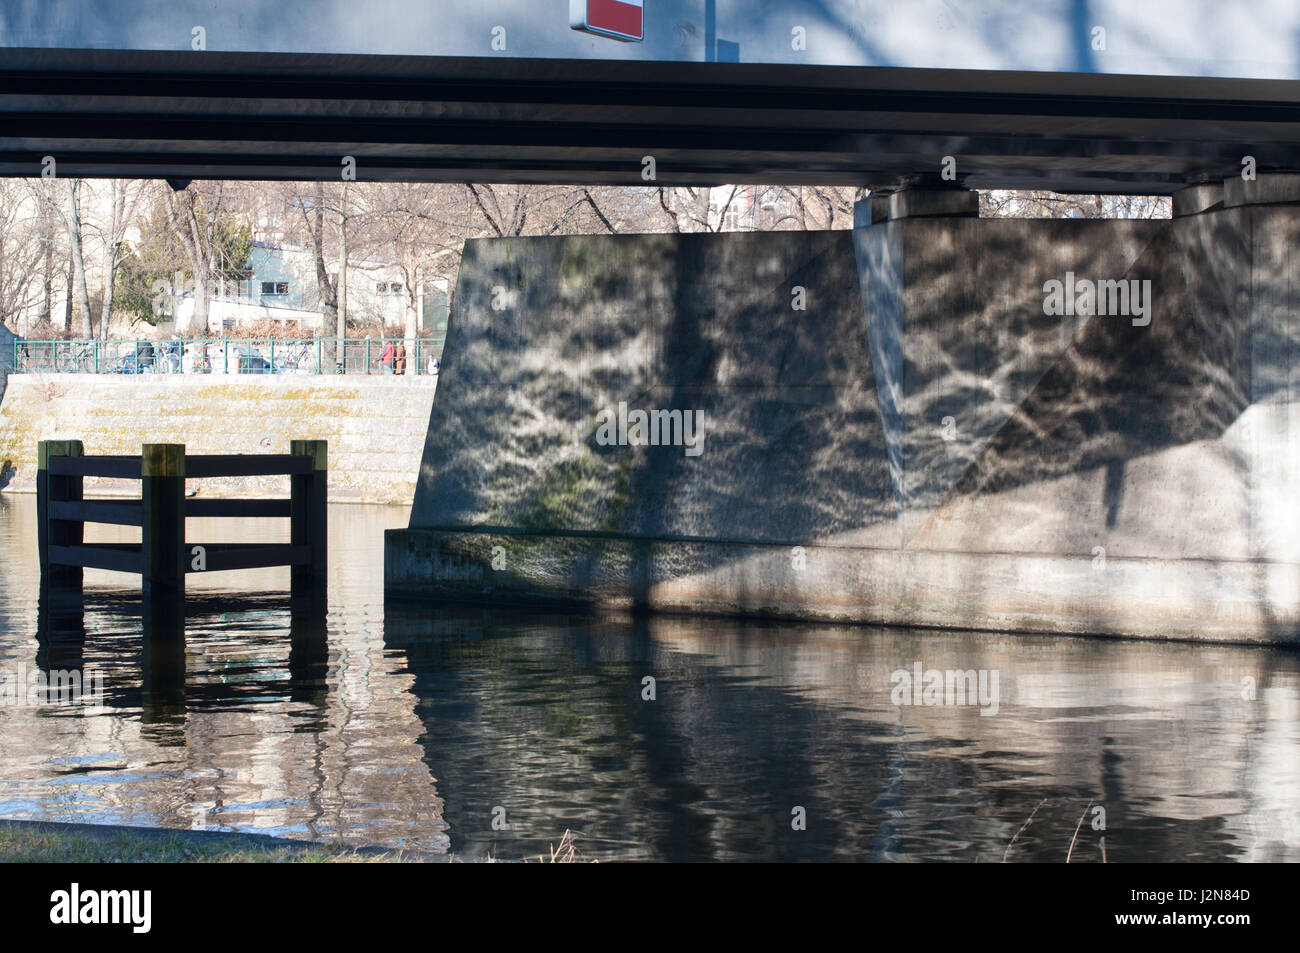 Meravigliosa luce e ombra riflessione sotto un ponte del fiume Spree, Berlino, Germania Foto Stock